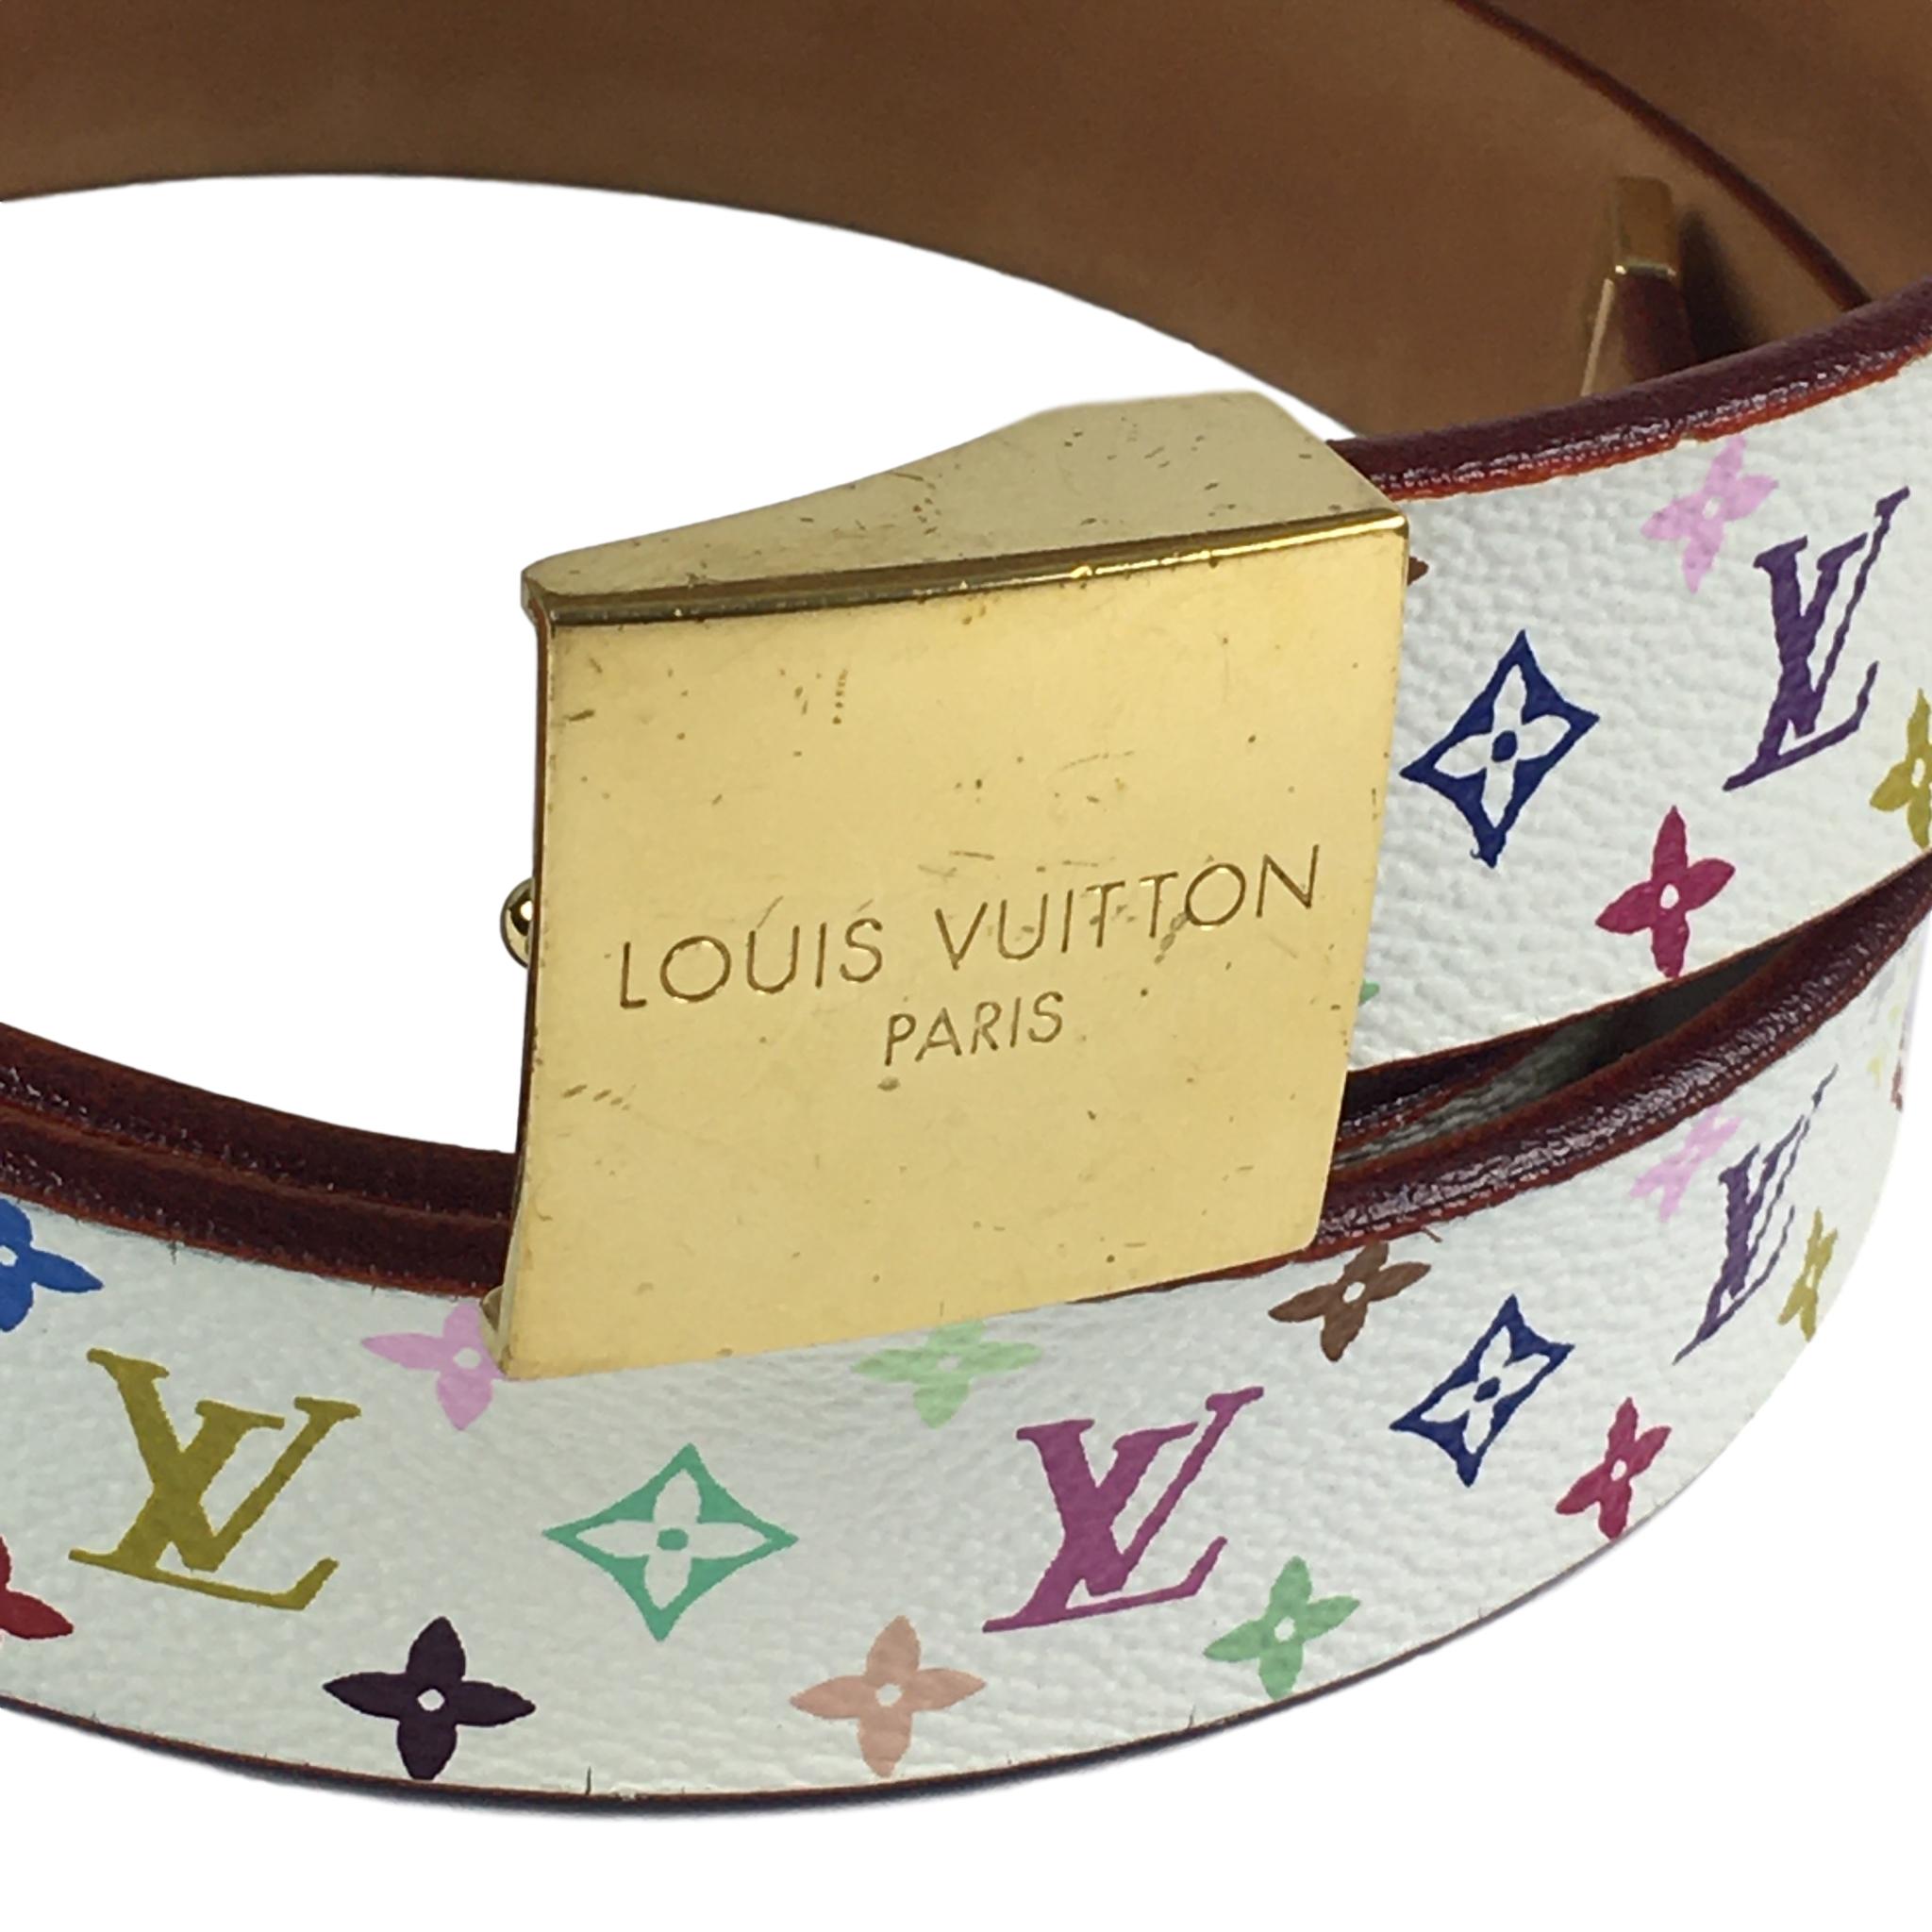 Louis Vuitton Monogram Takashi Murakami Collection Belt